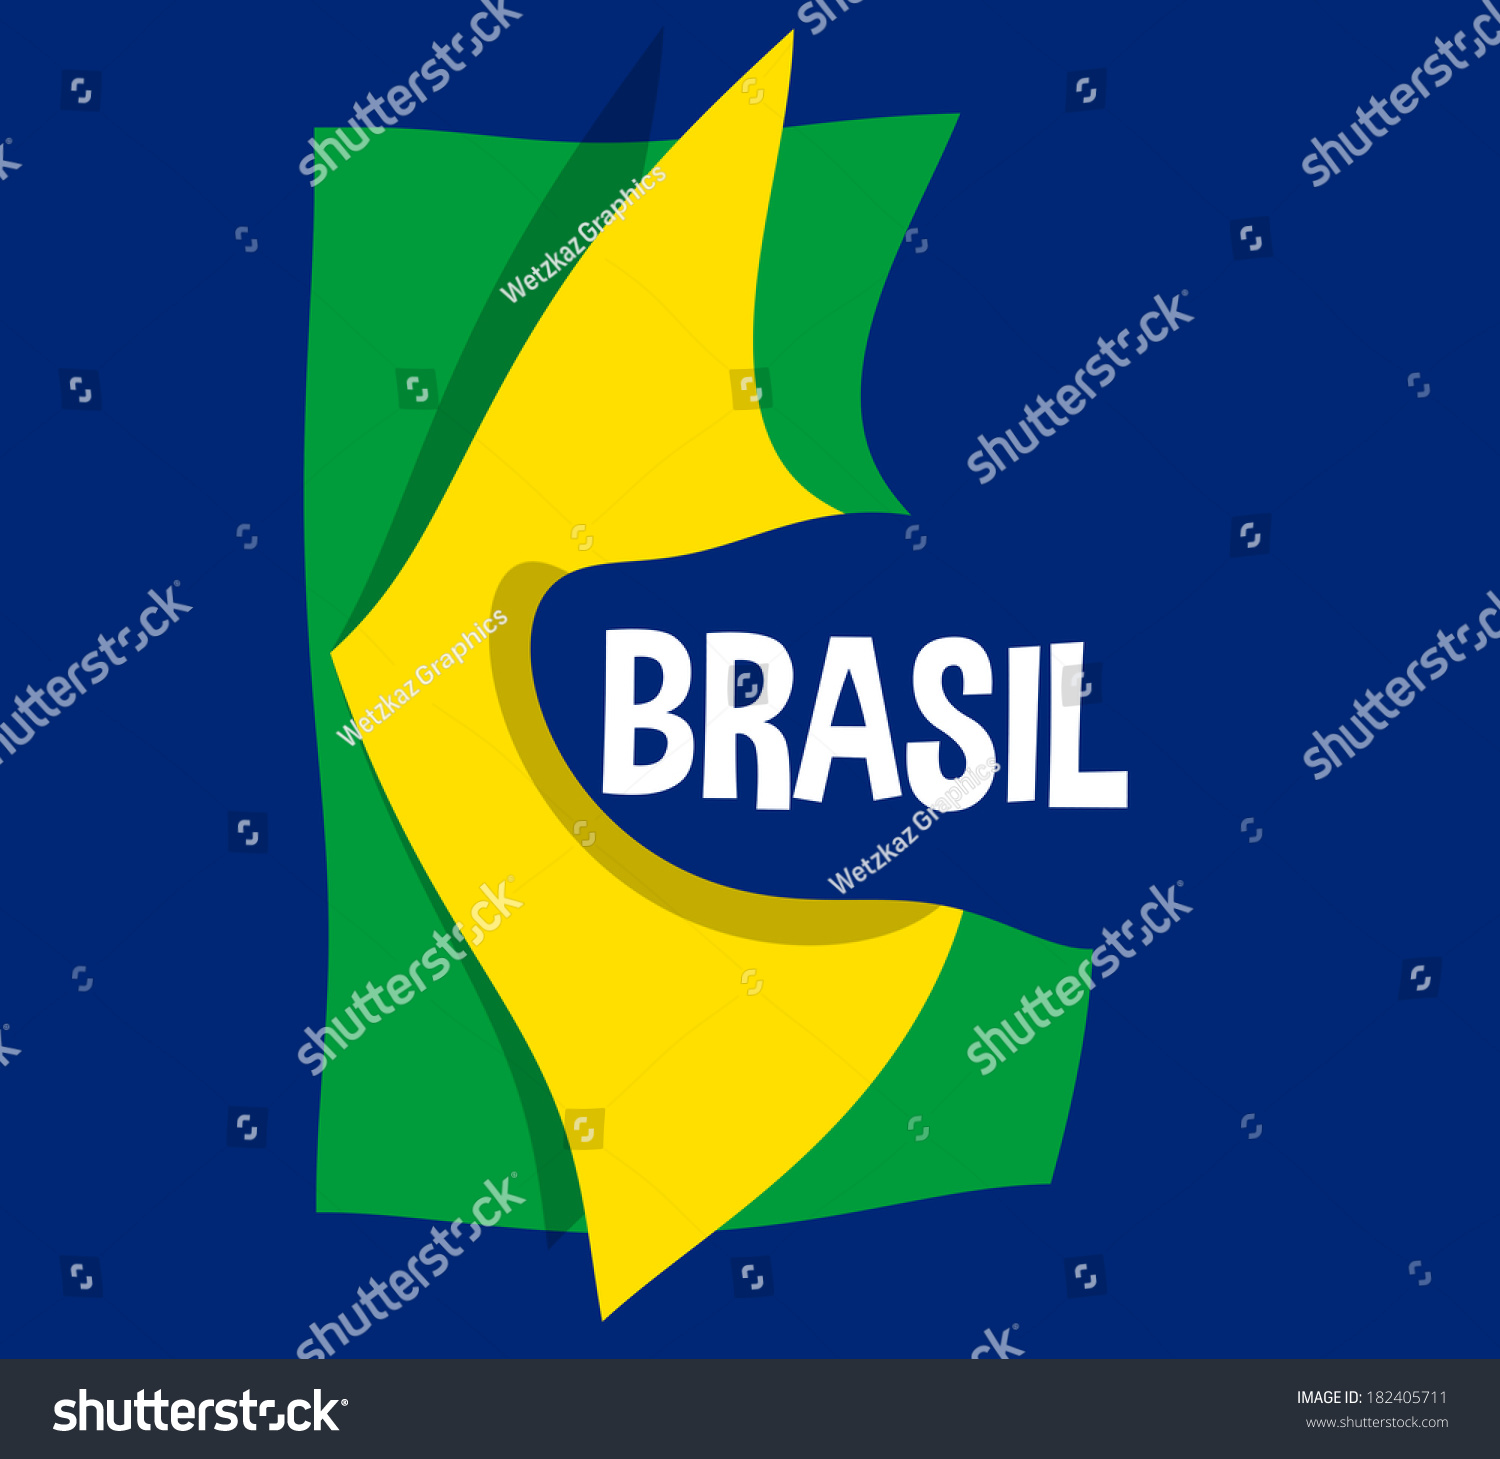 brasil #182405711